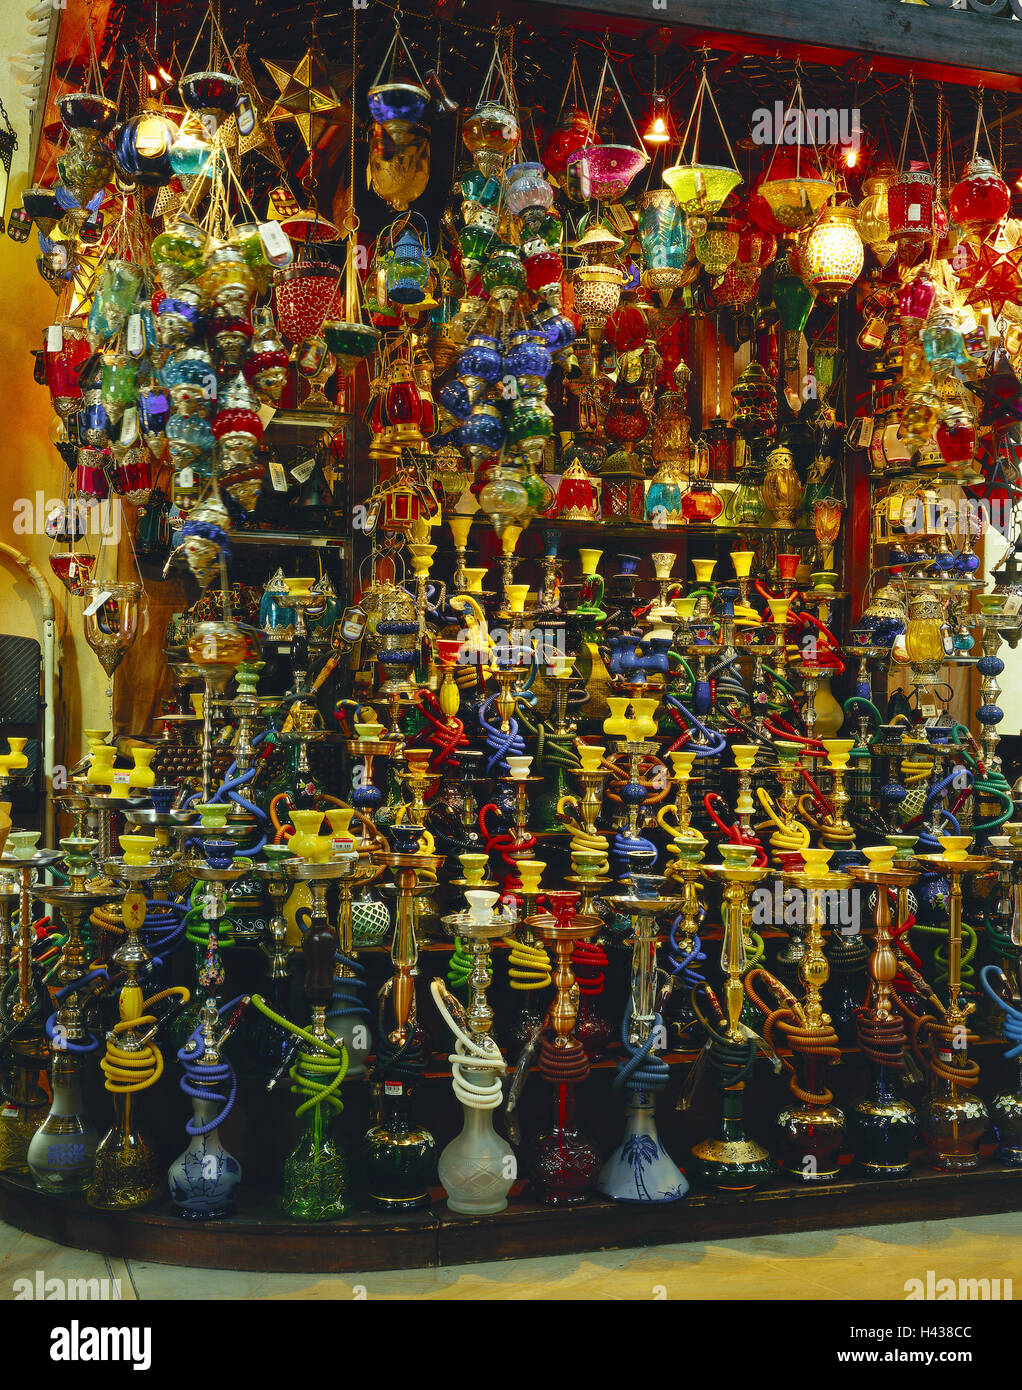 Emirats arabes unis, dubaï, Souk Madinat Jumeirah, magasin de souvenirs, de l'eau des sifflets, est décédé, fumée, VAE, Souk, d'affaires, boutique de souvenirs, à l'intérieur, de sifflets, de nombreux, ventes, tourisme, généralement, l'icône, détente, culture, tradition, Banque D'Images